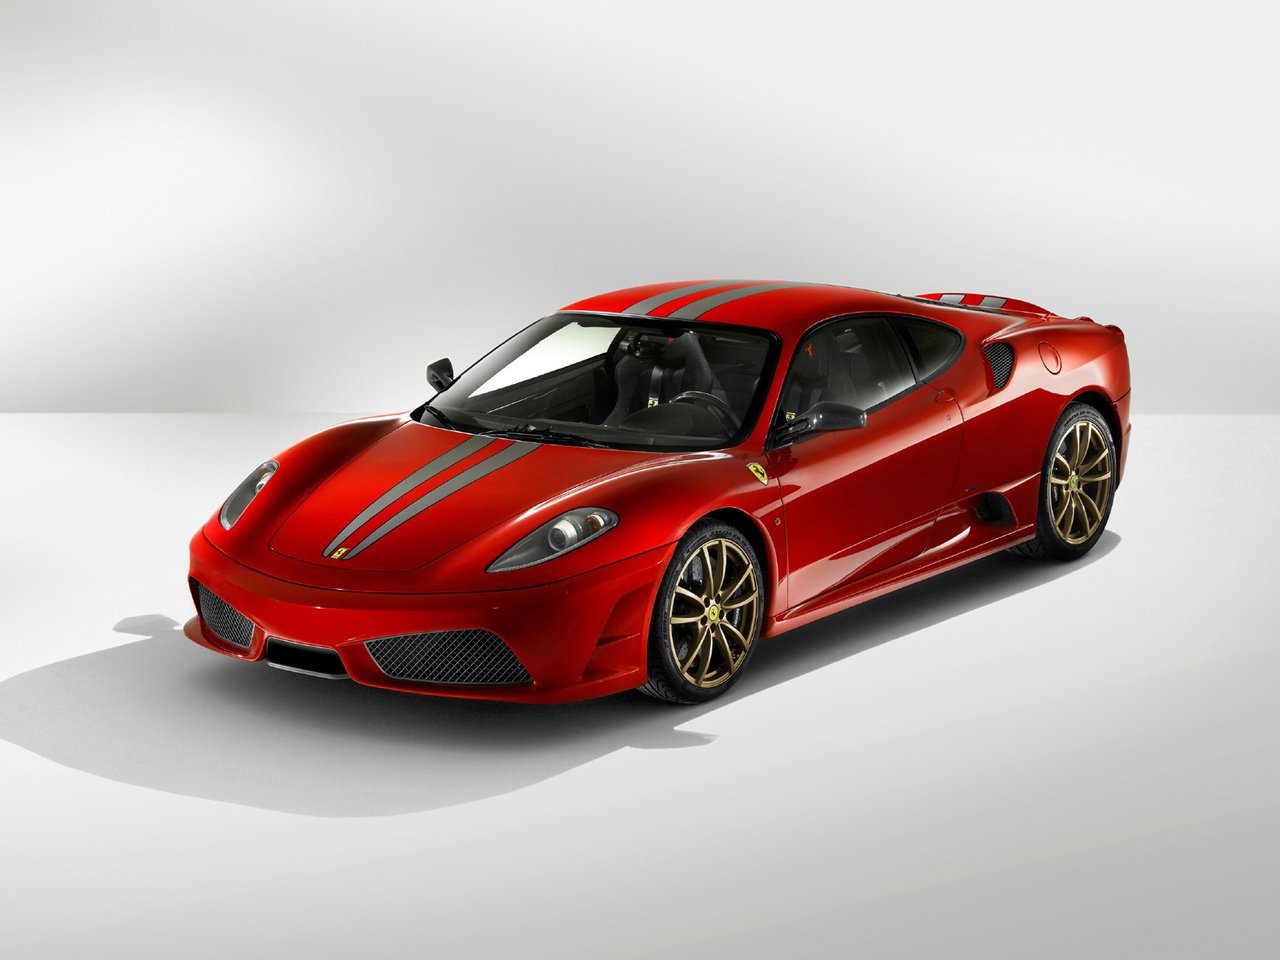 Расход газа одной комплектации купе Scuderia Ferrari F430. Разница стоимости заправки газом и бензином. Автономный пробег до и после установки ГБО.